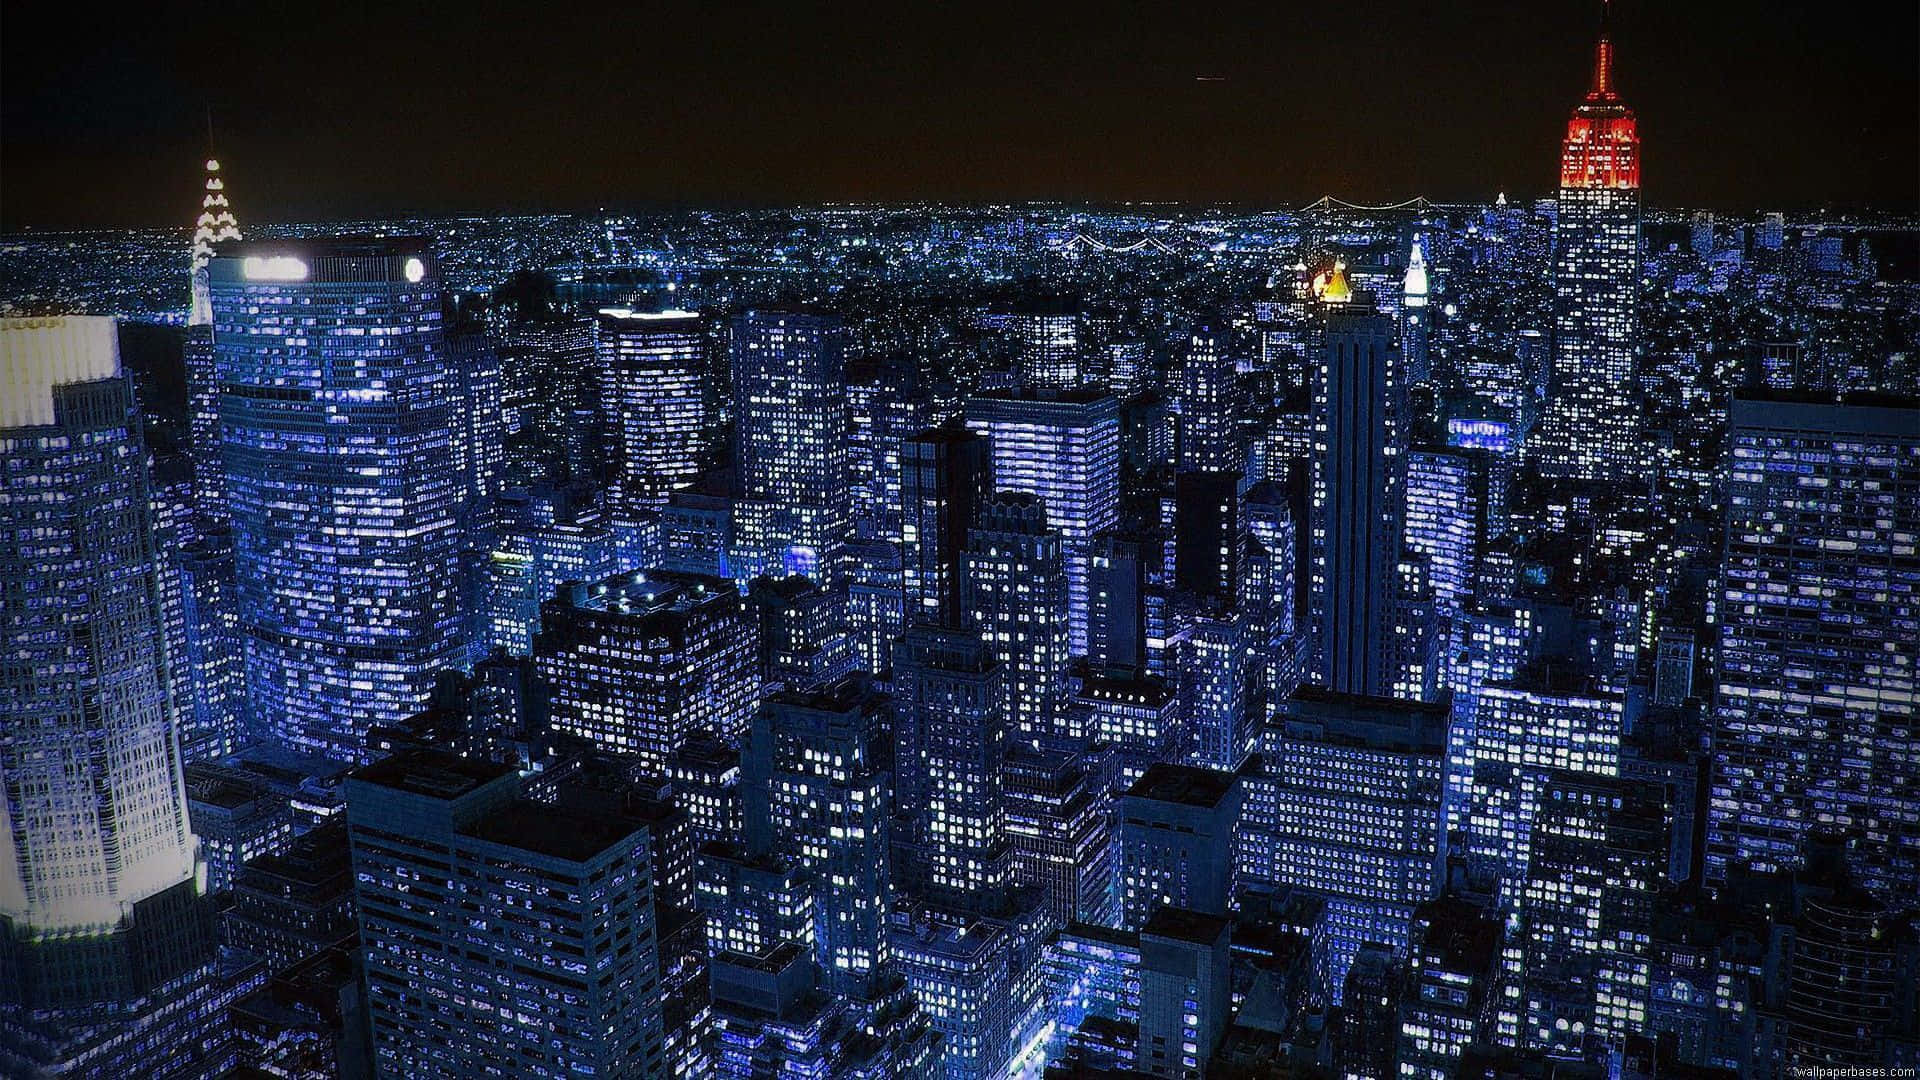 Imagensda Noite Da Cidade De Nova York.